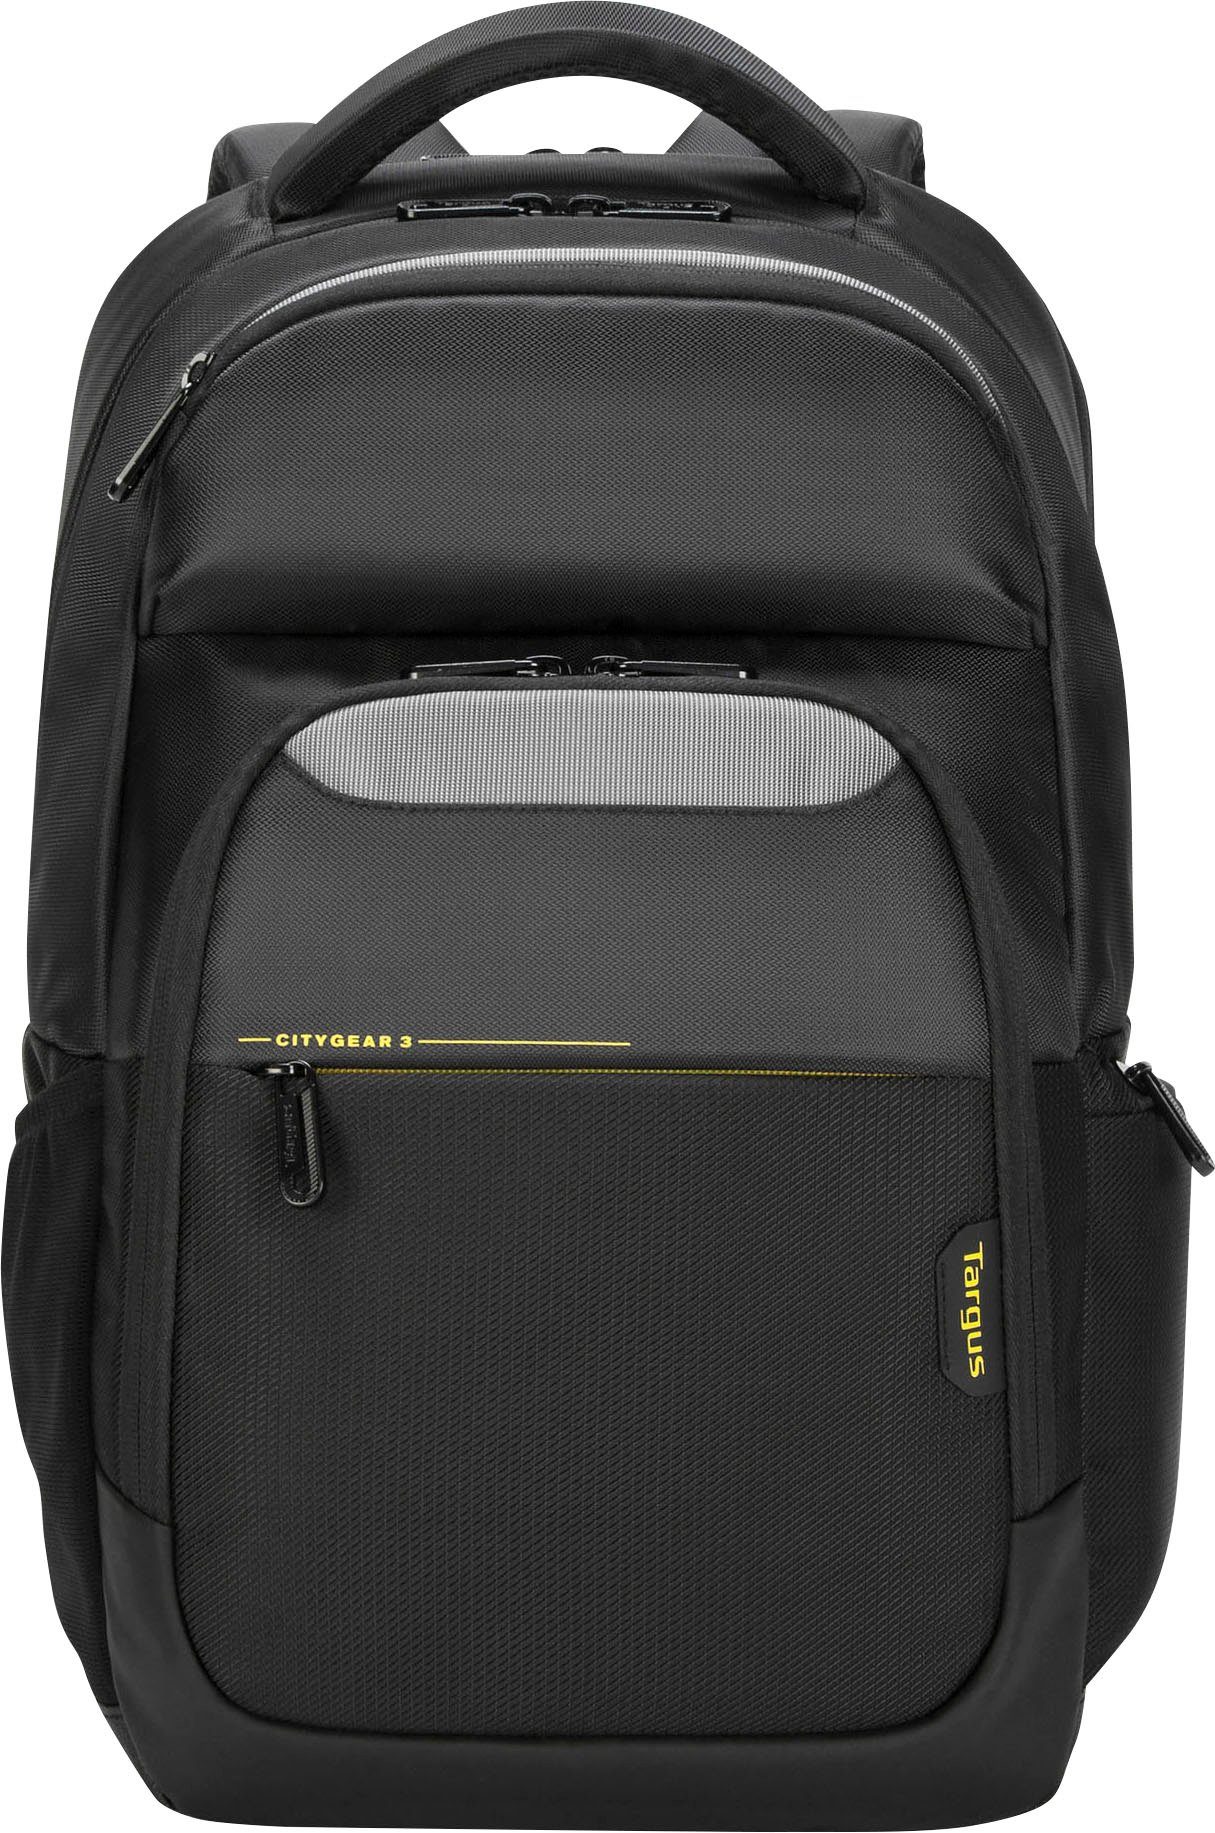 Targus Laptoptasche CG3 15.6 Backpack W raincover, Netztaschen und -fächer  mit Reißverschluss für optimale Organisation | Businesstaschen